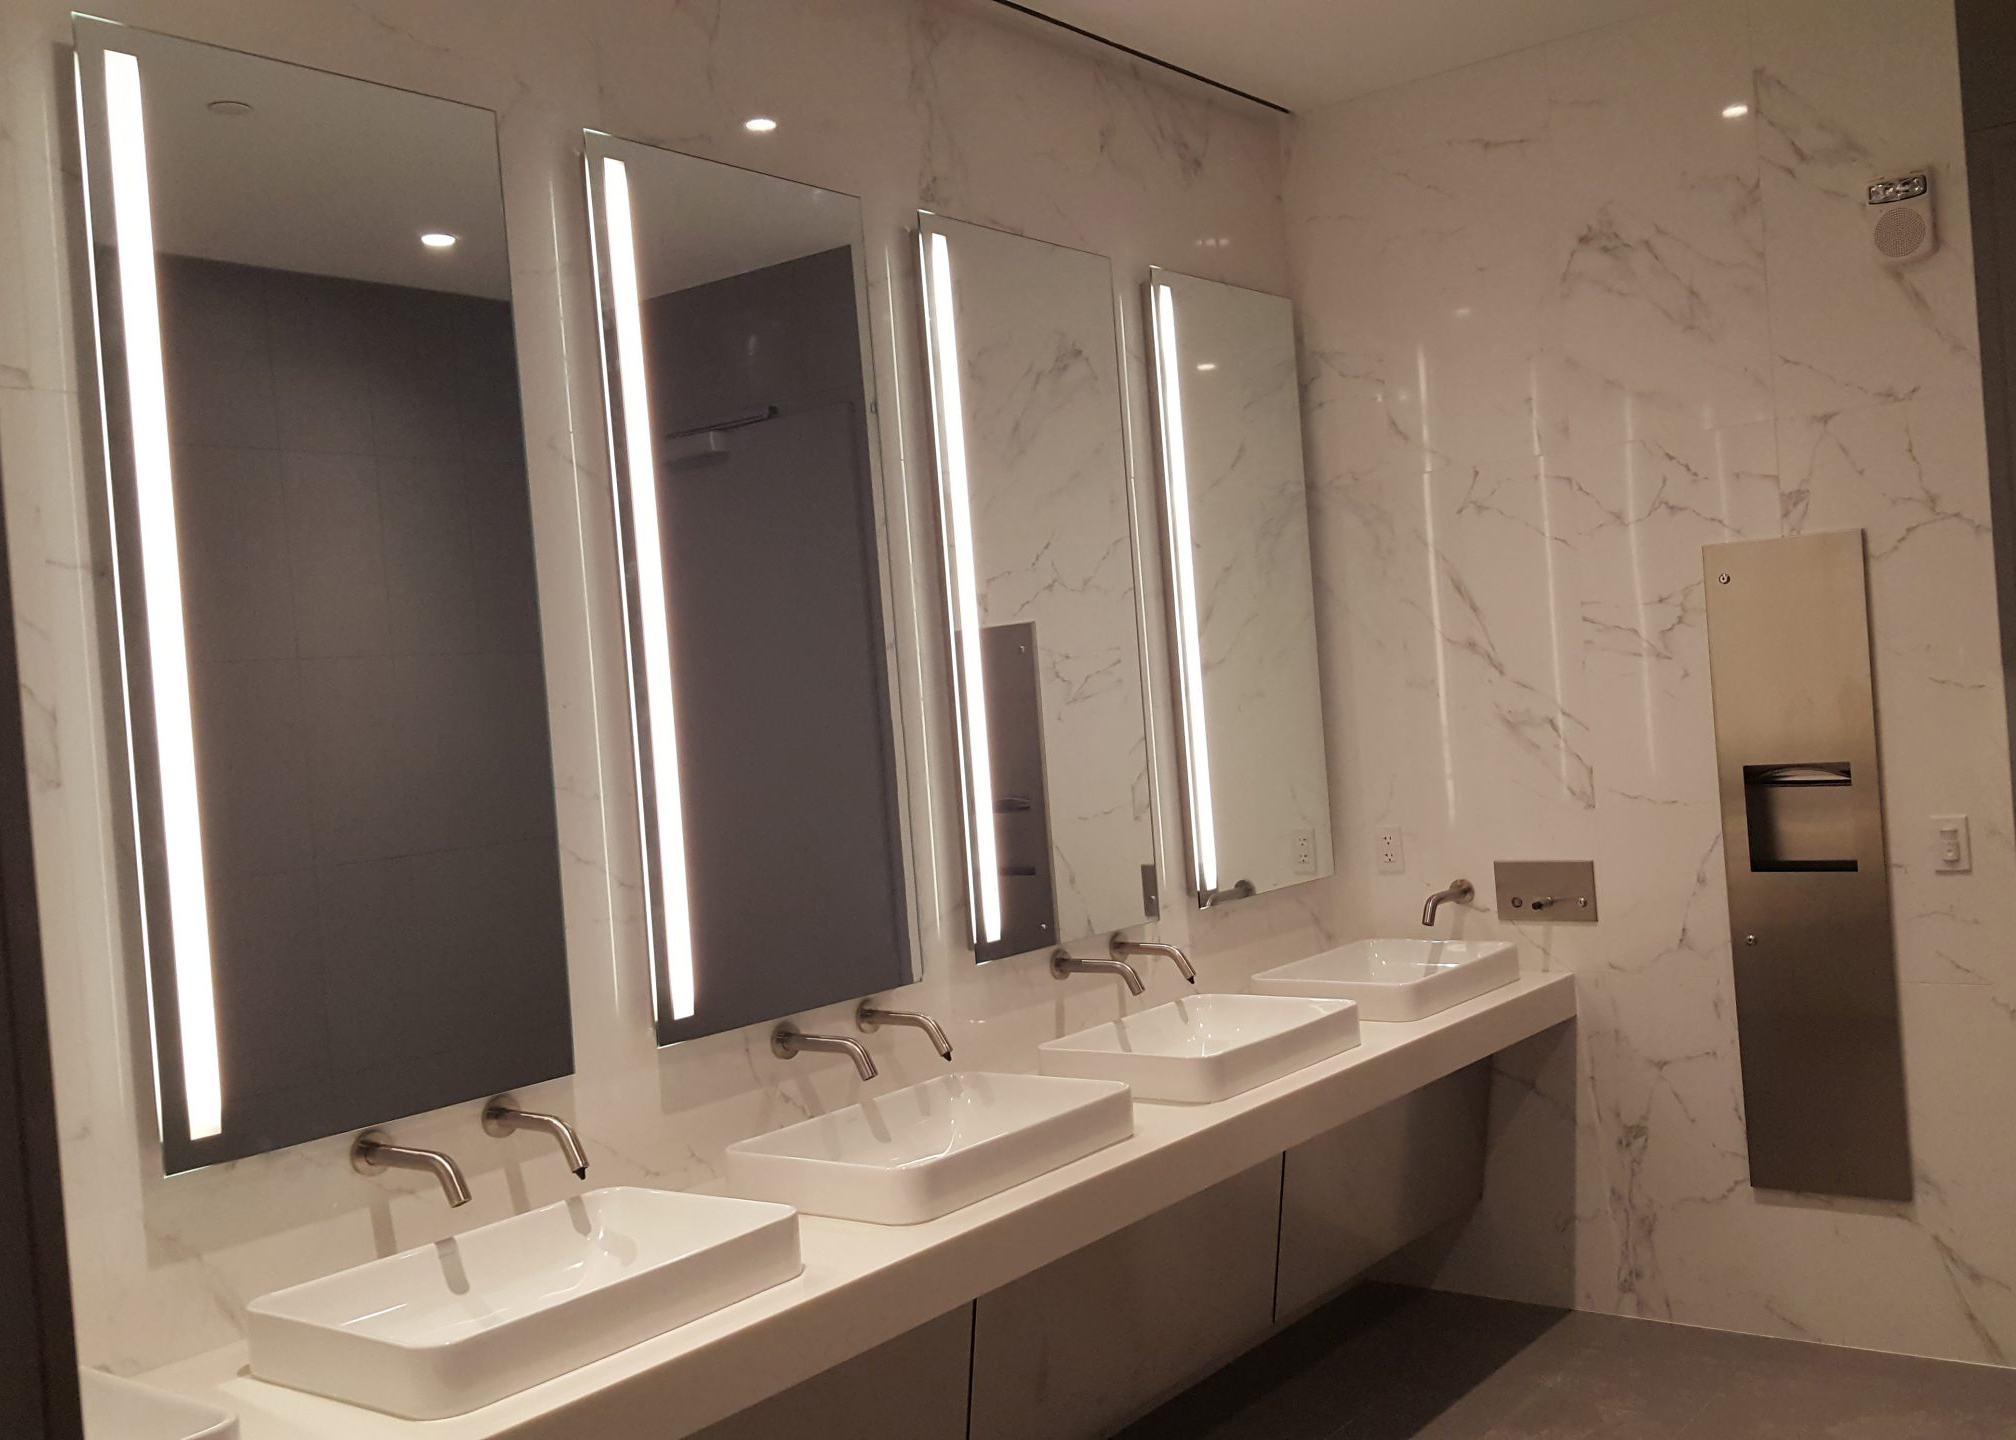 LED Lit Mirrors | One Vanderbilt Tower | Case Studies | Meek Mirrors